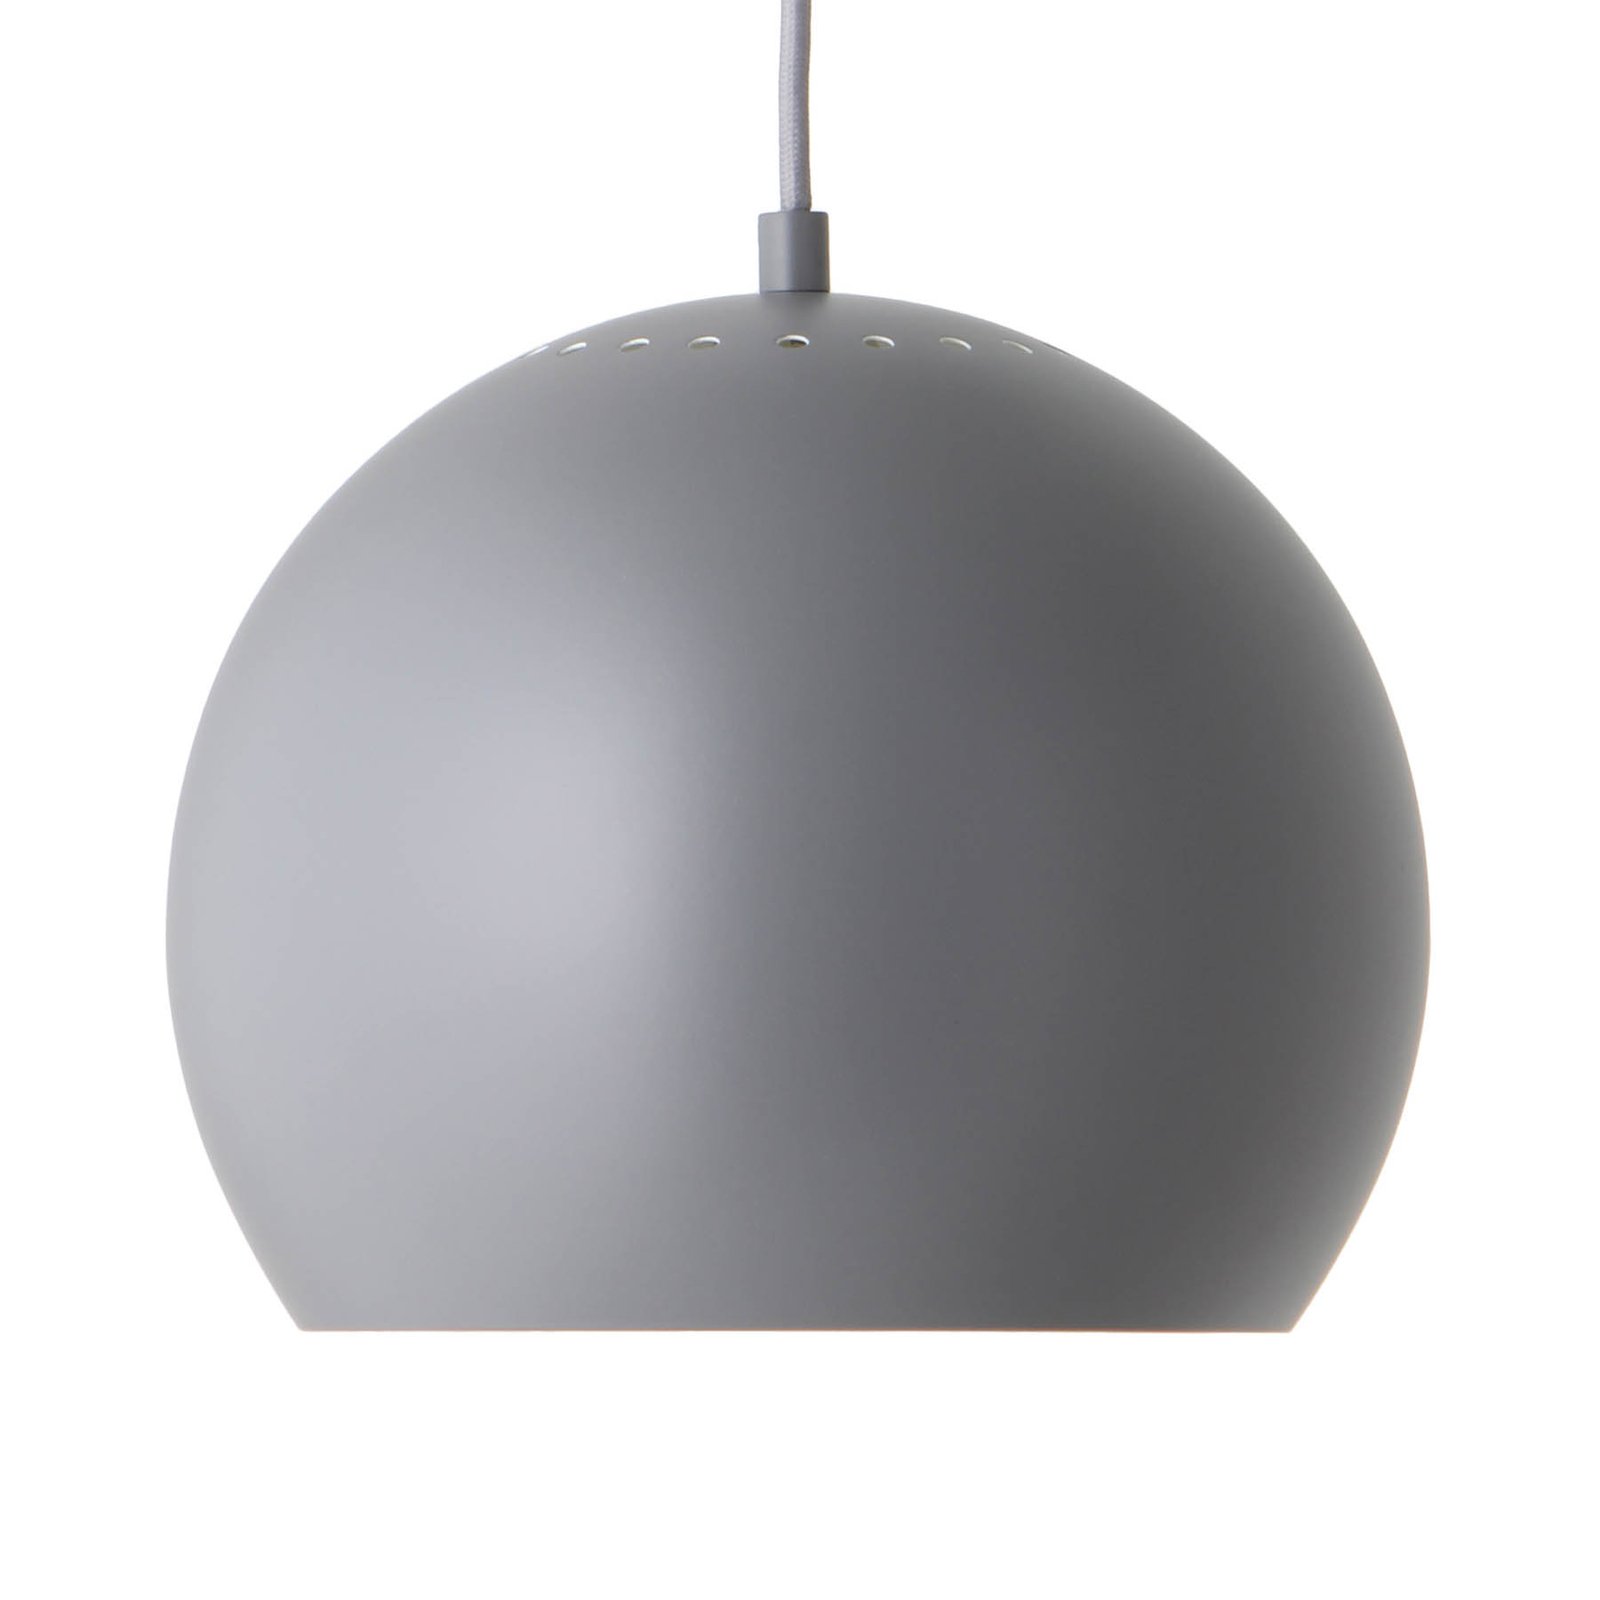 FRANDSEN gömb függő lámpa, Ø25 cm, matt világossz.